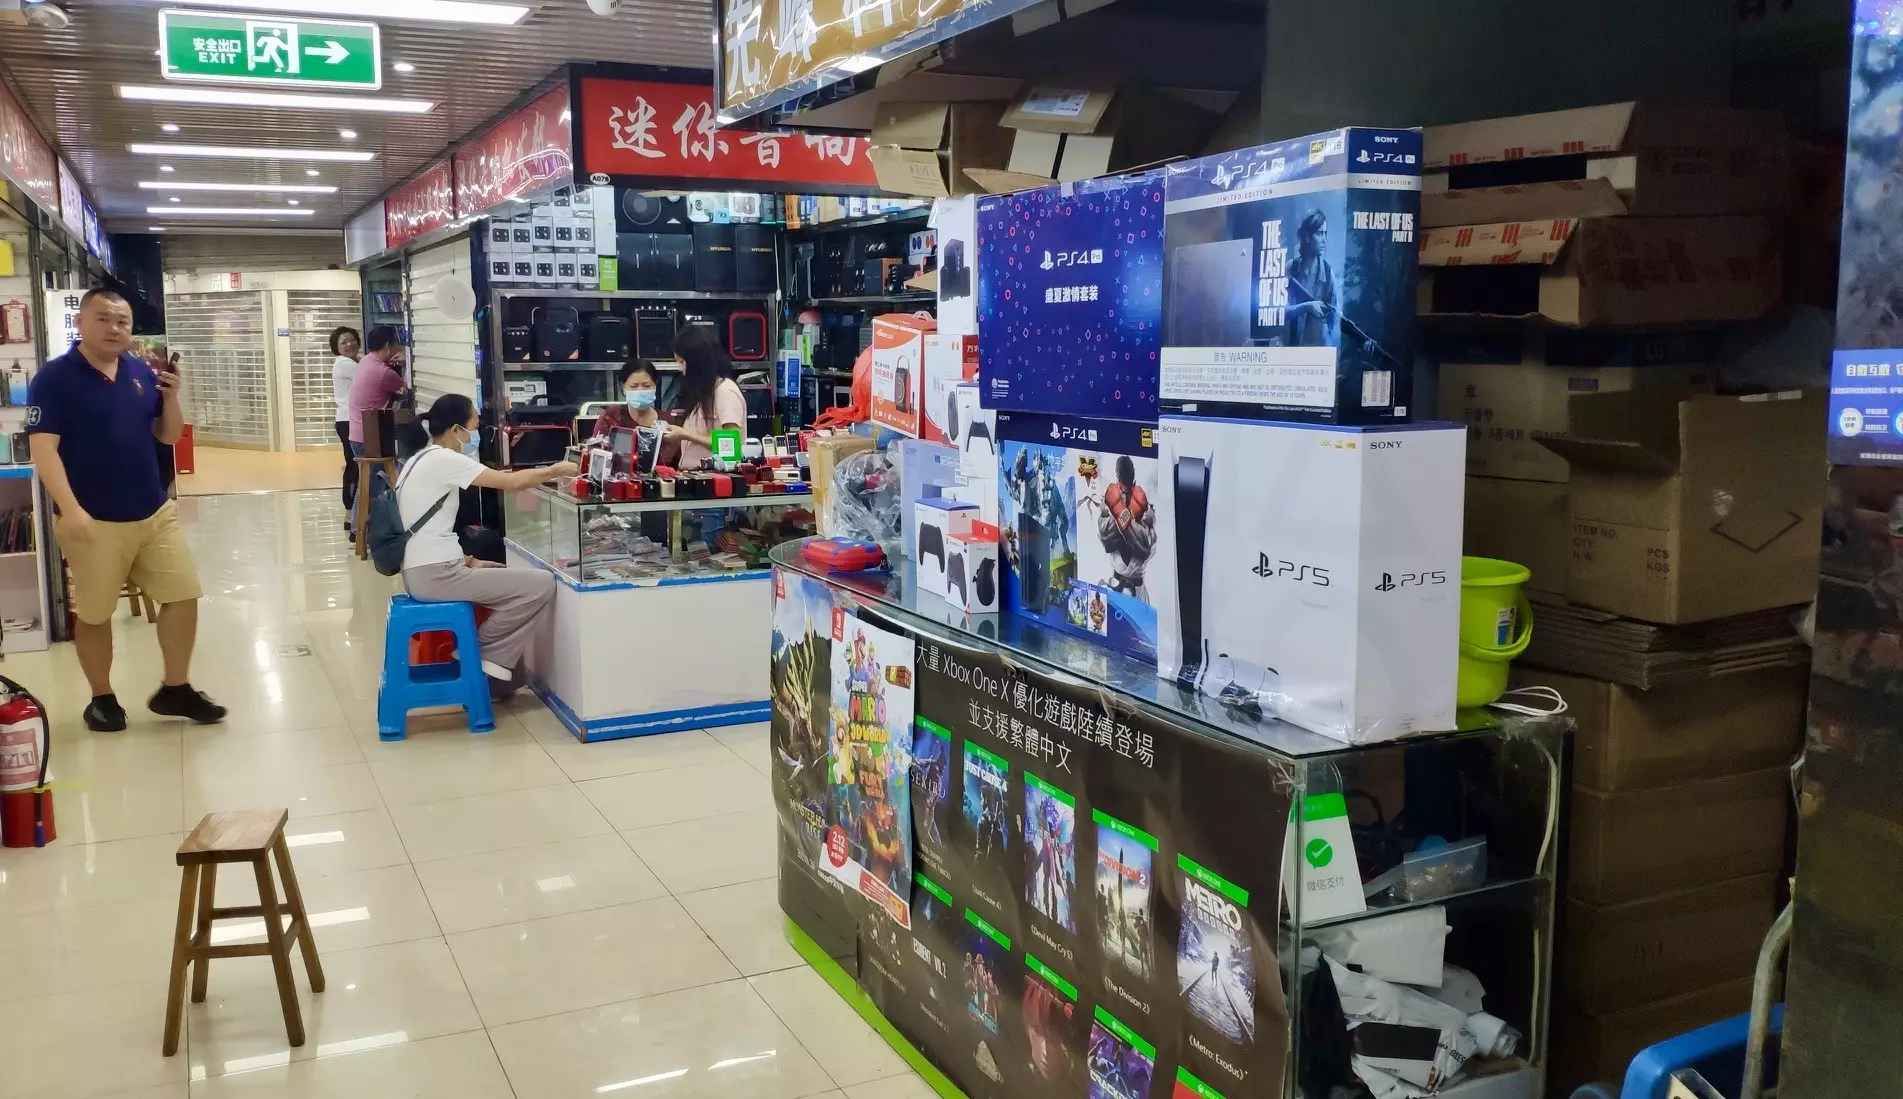 PS5 in a shop in Shenzhen /